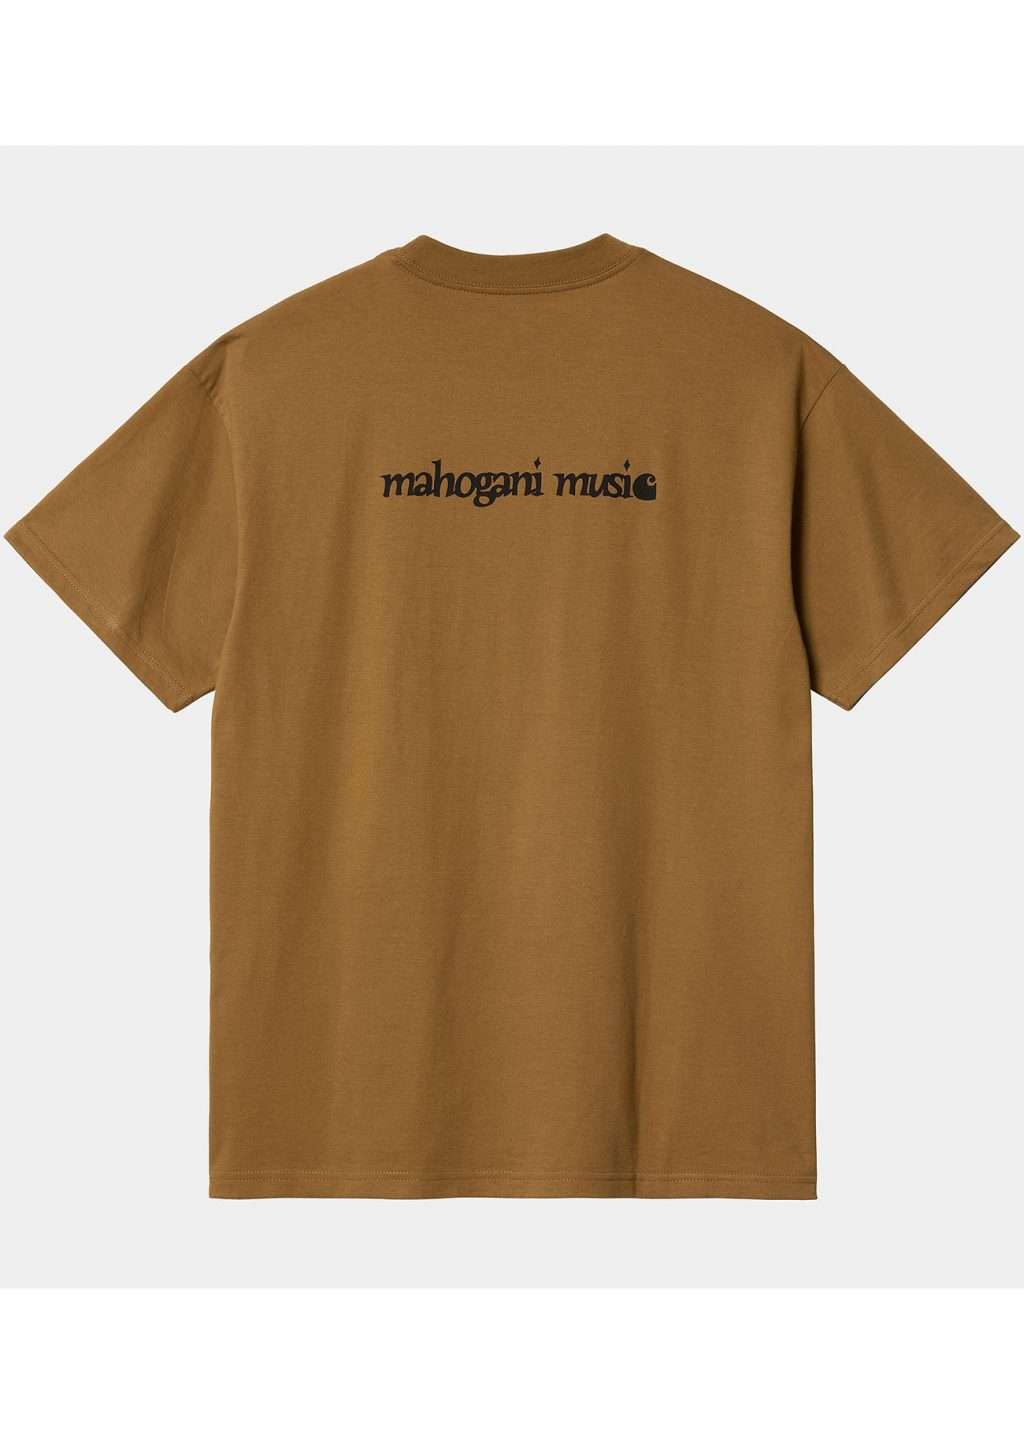 Carhartt WIP S/S Mahogani Music T-Shirt